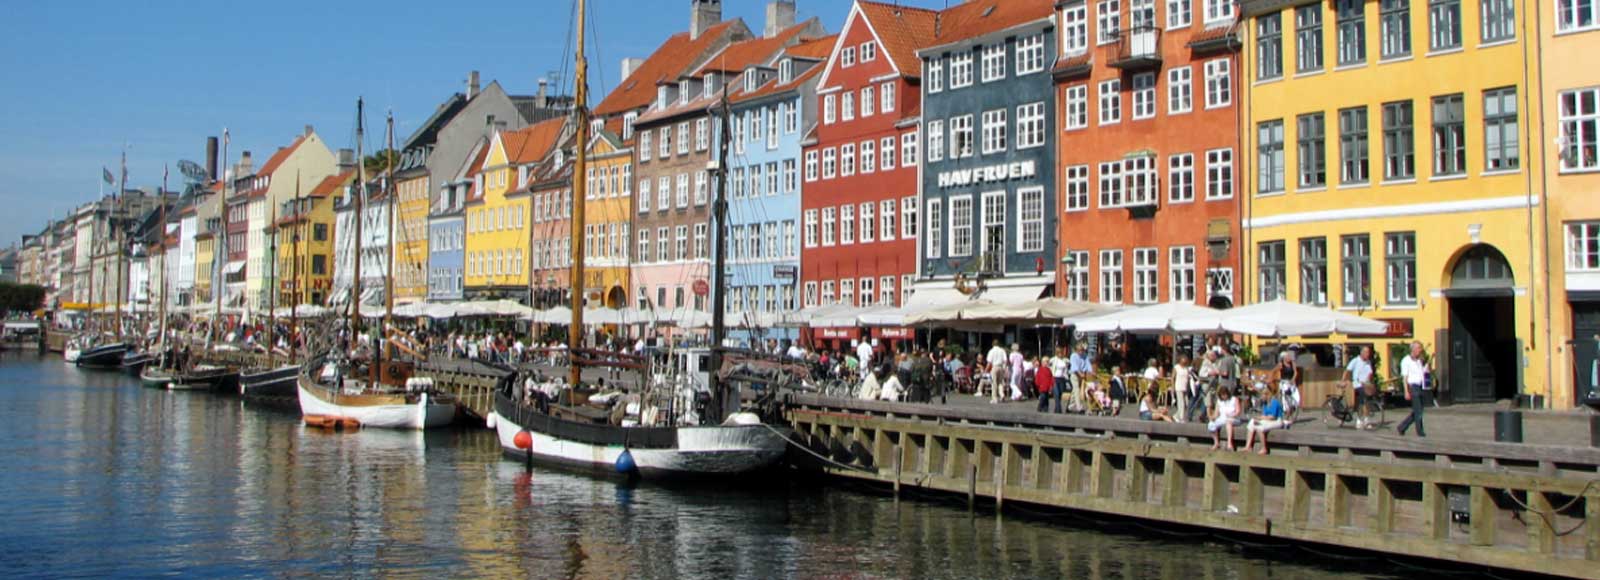 Ofertas de Traslados en Copenhague. Traslados económicos en Copenhague 